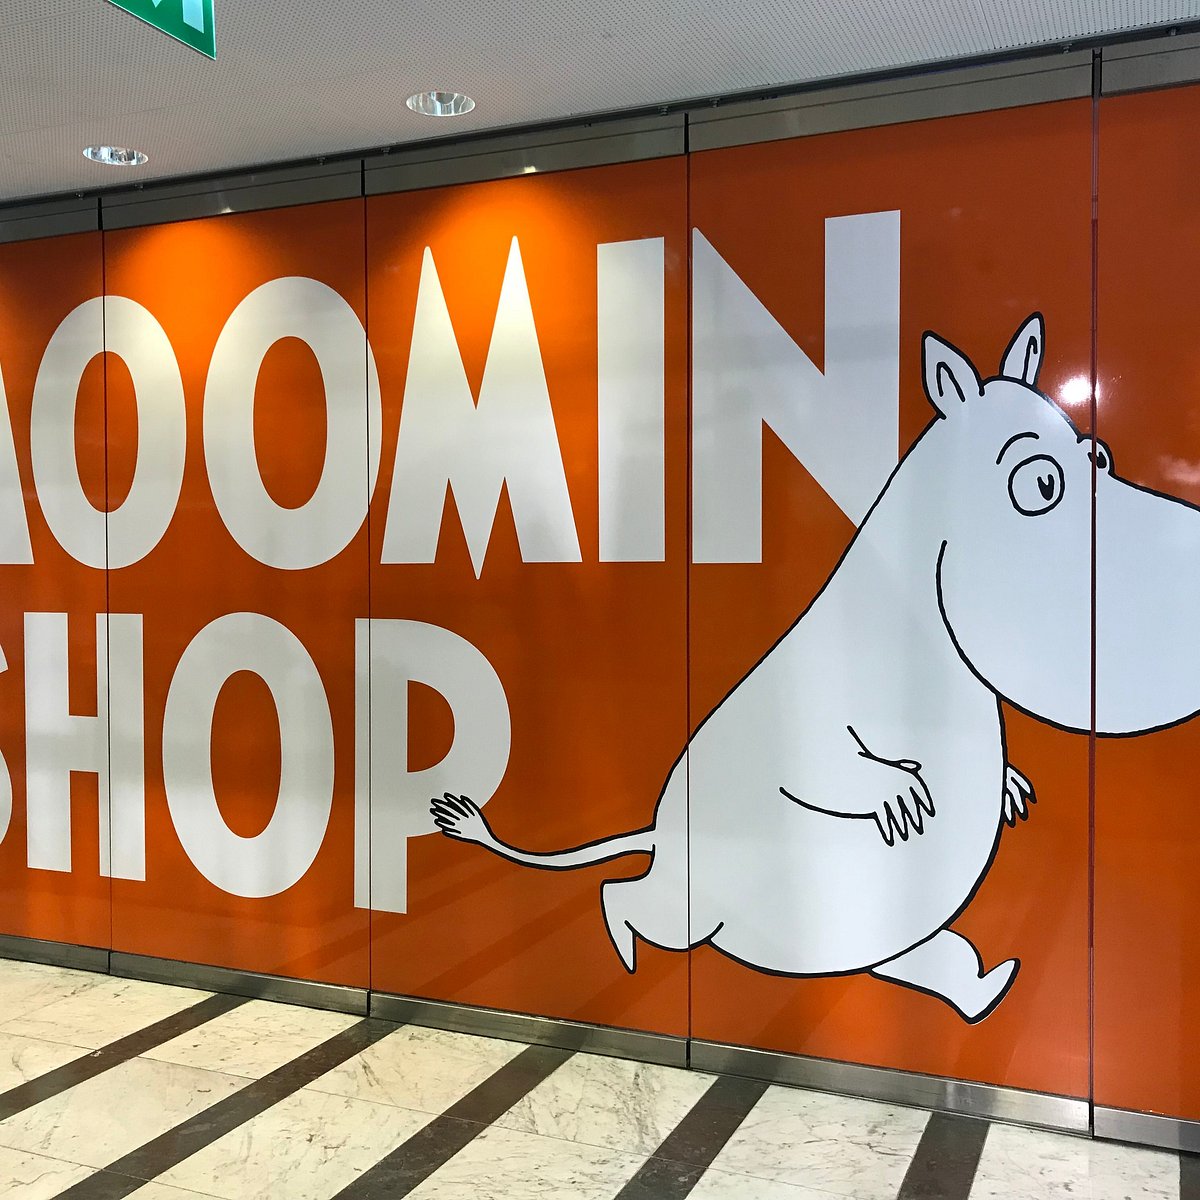 Moomin - Réputation